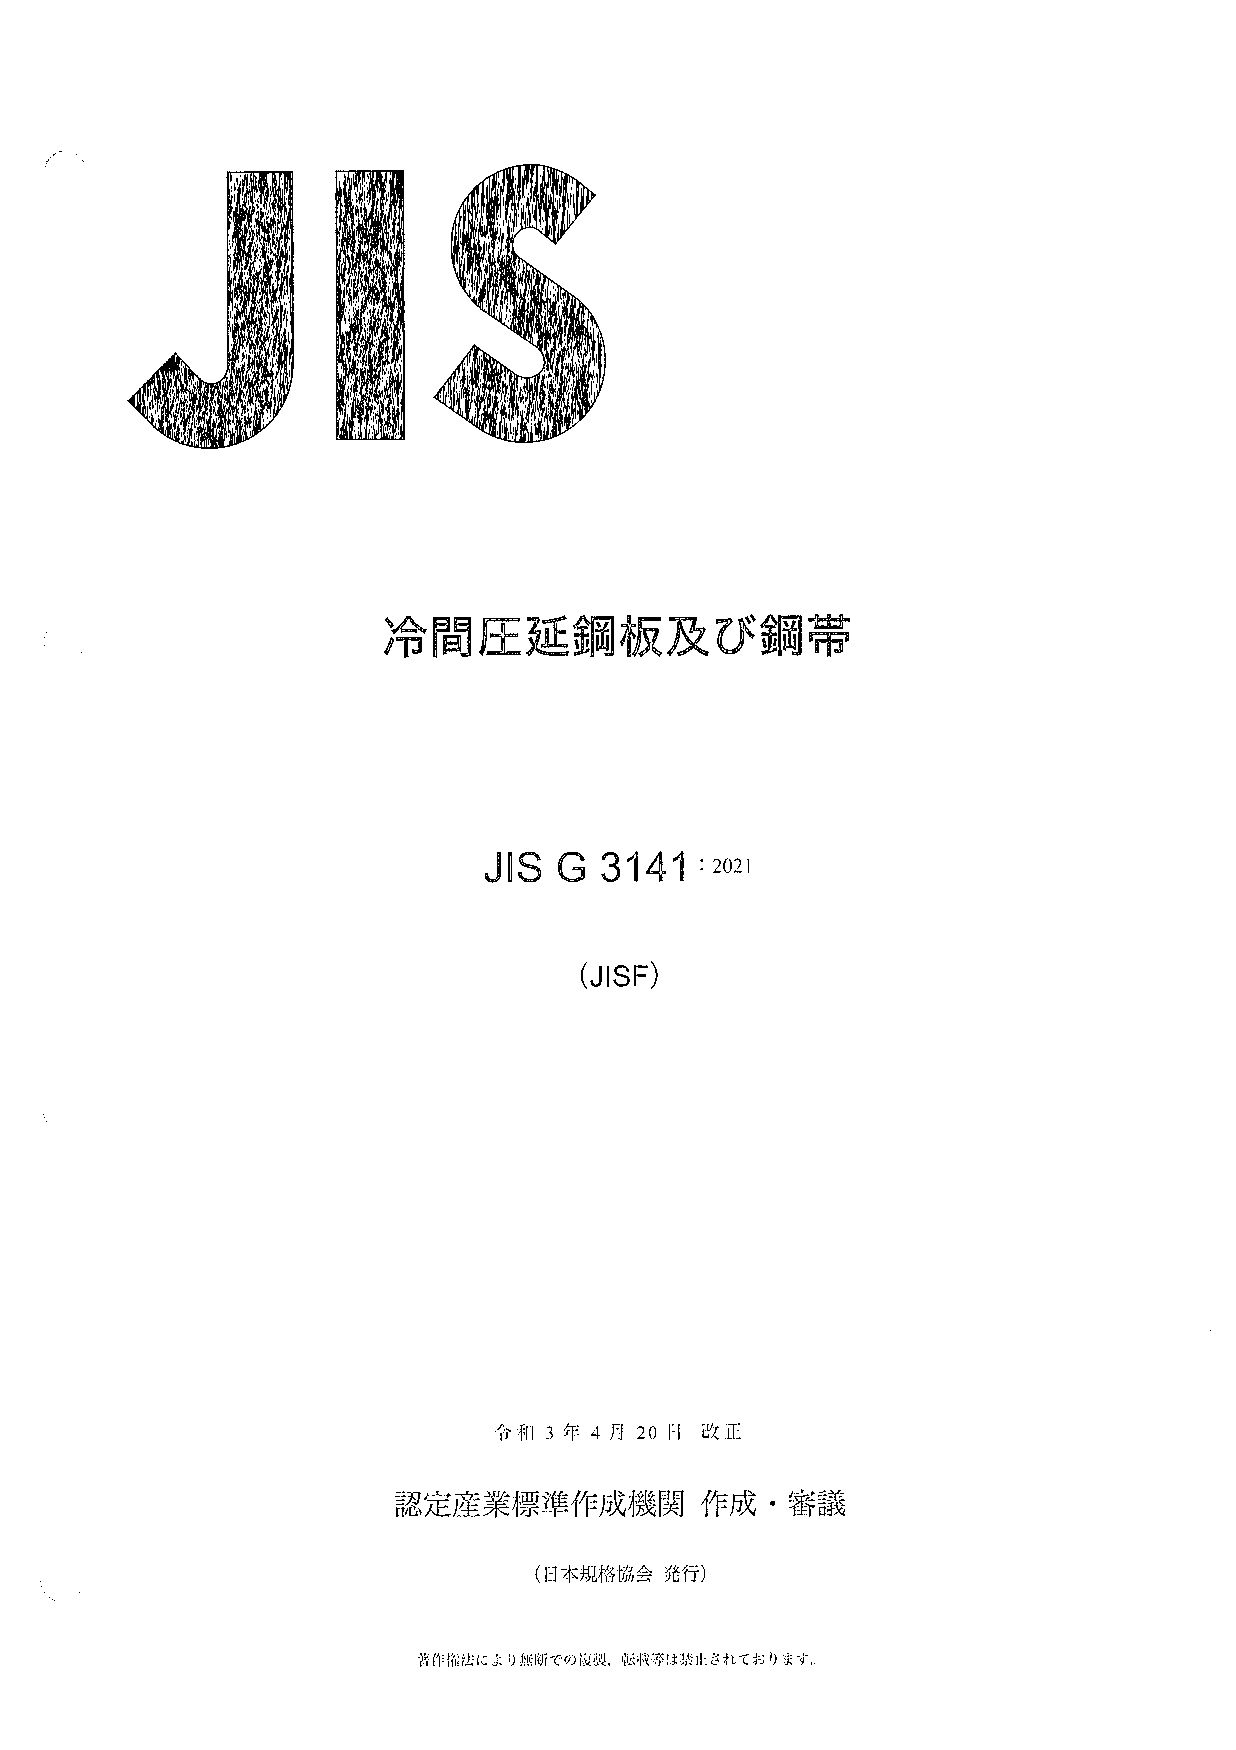 JIS G 3141:2021封面图